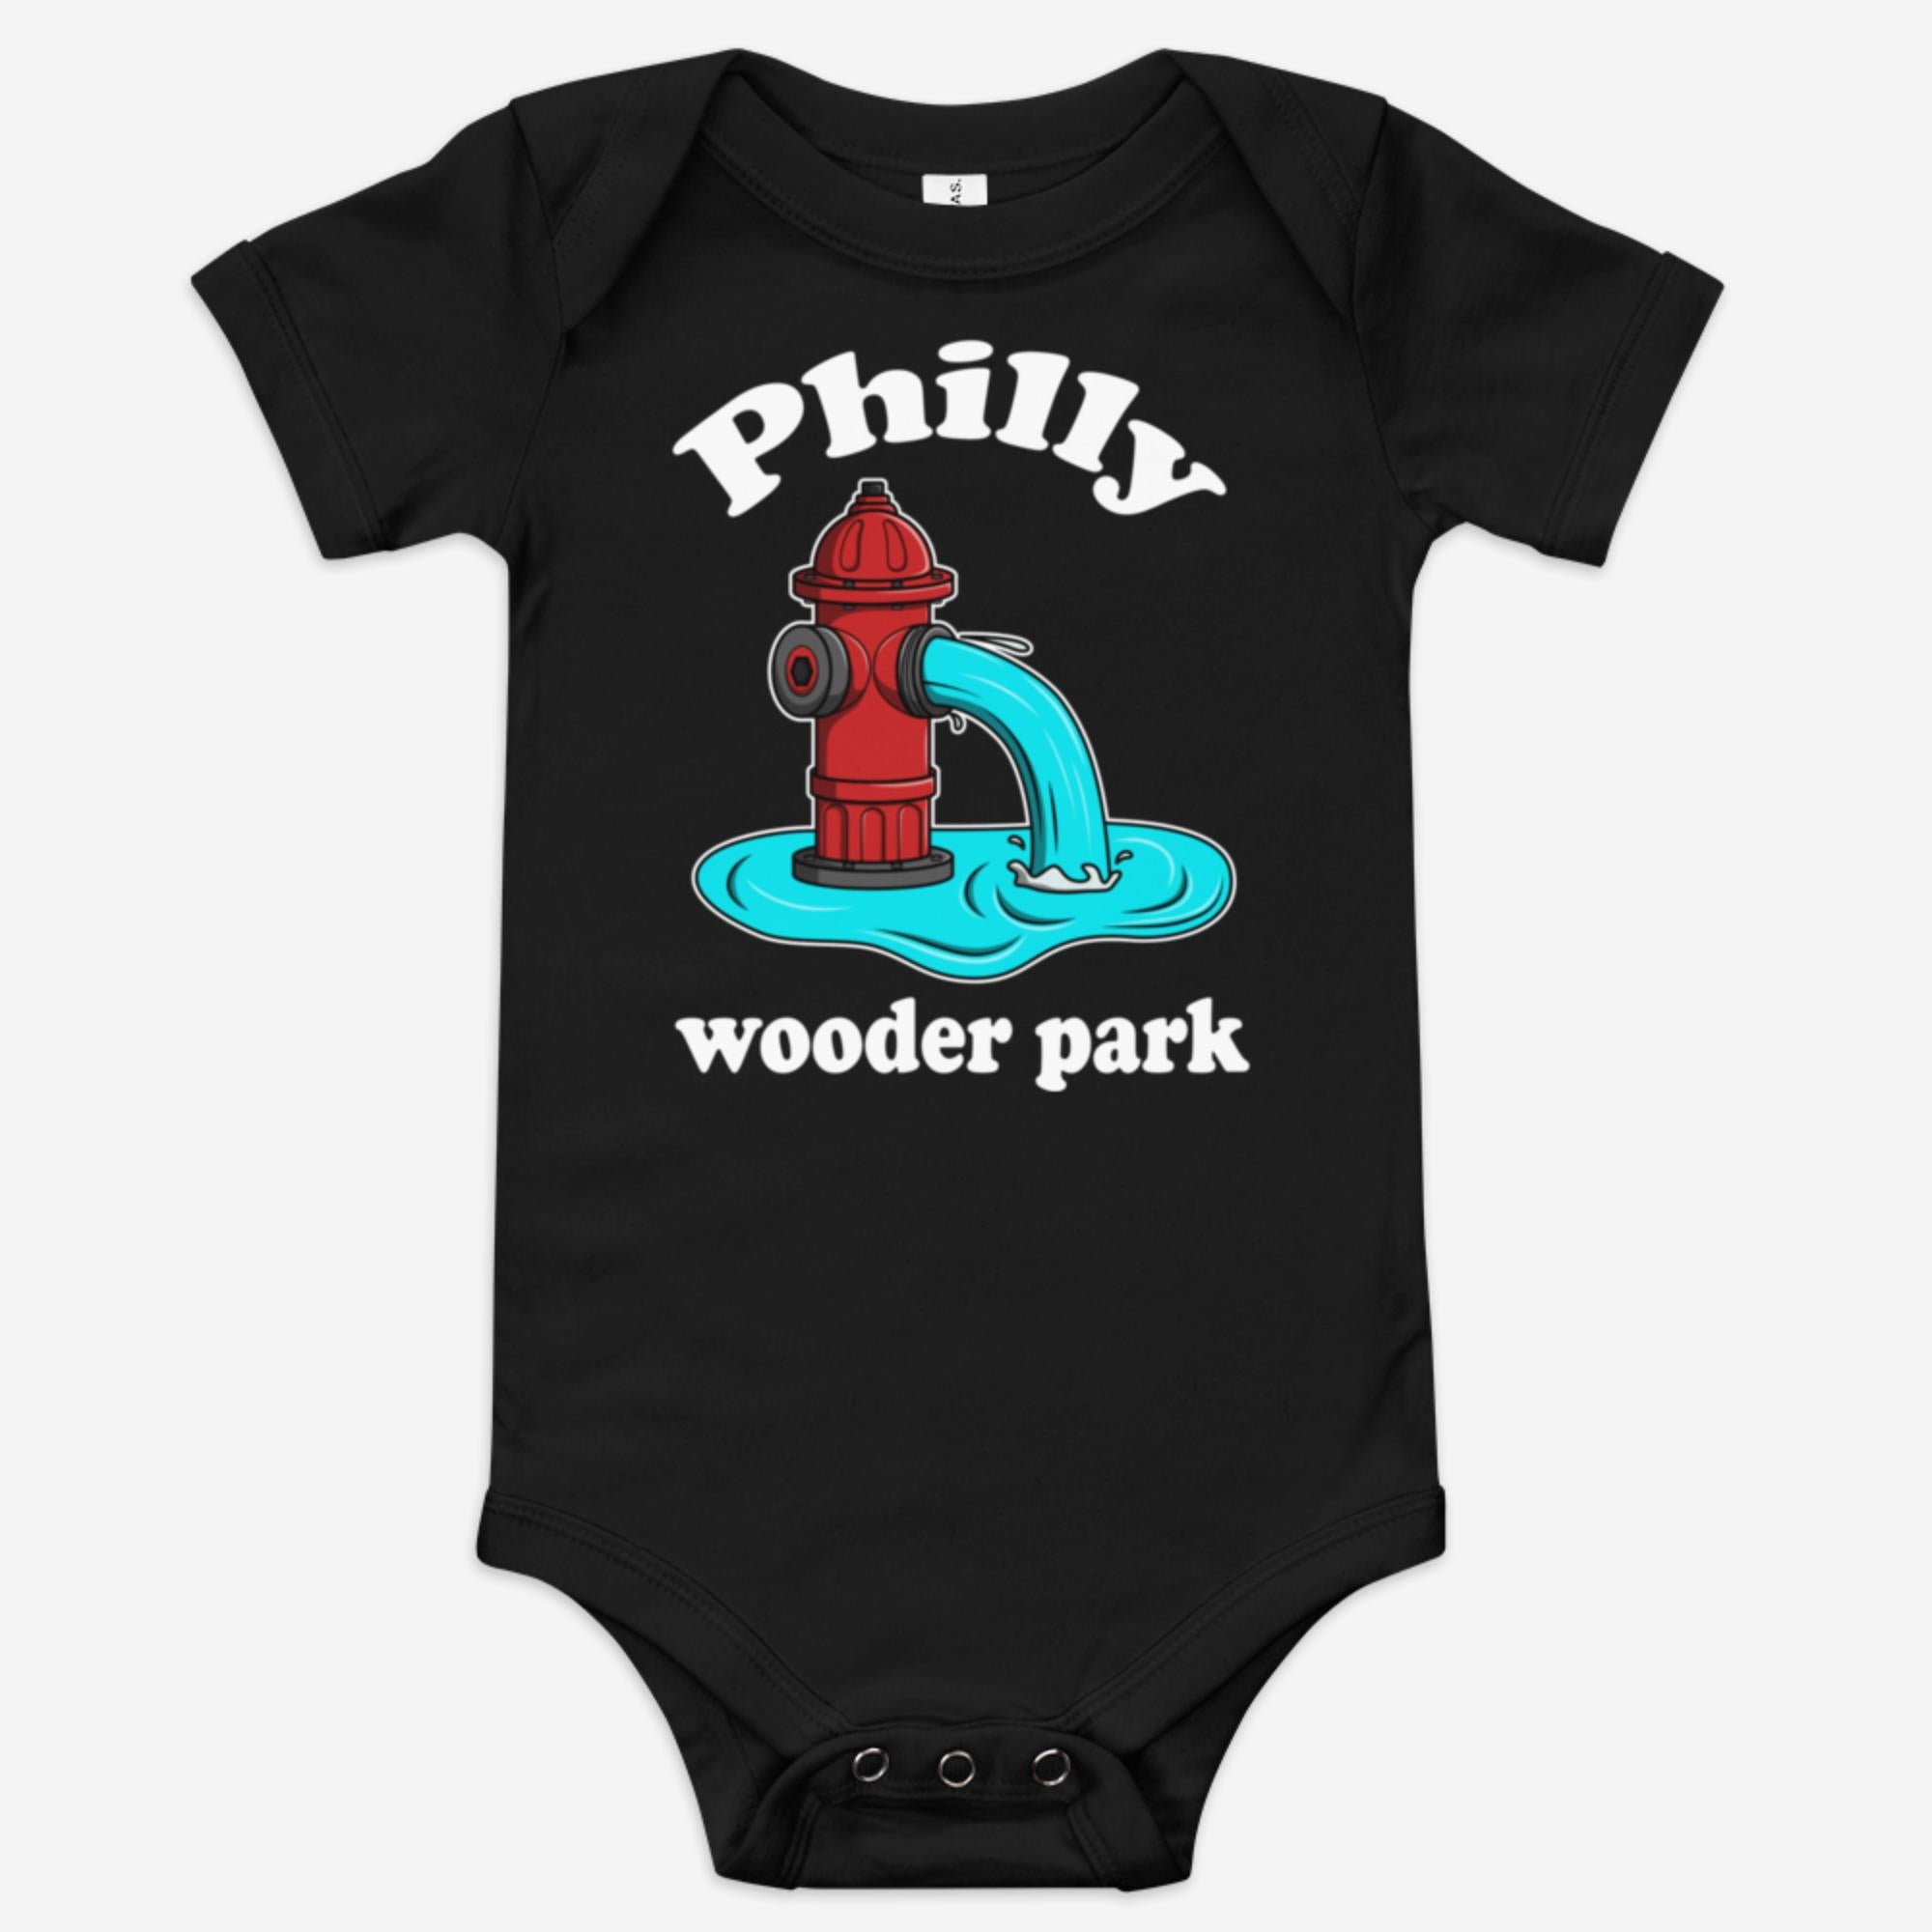 "Philly Wooder Park" Baby Onesie